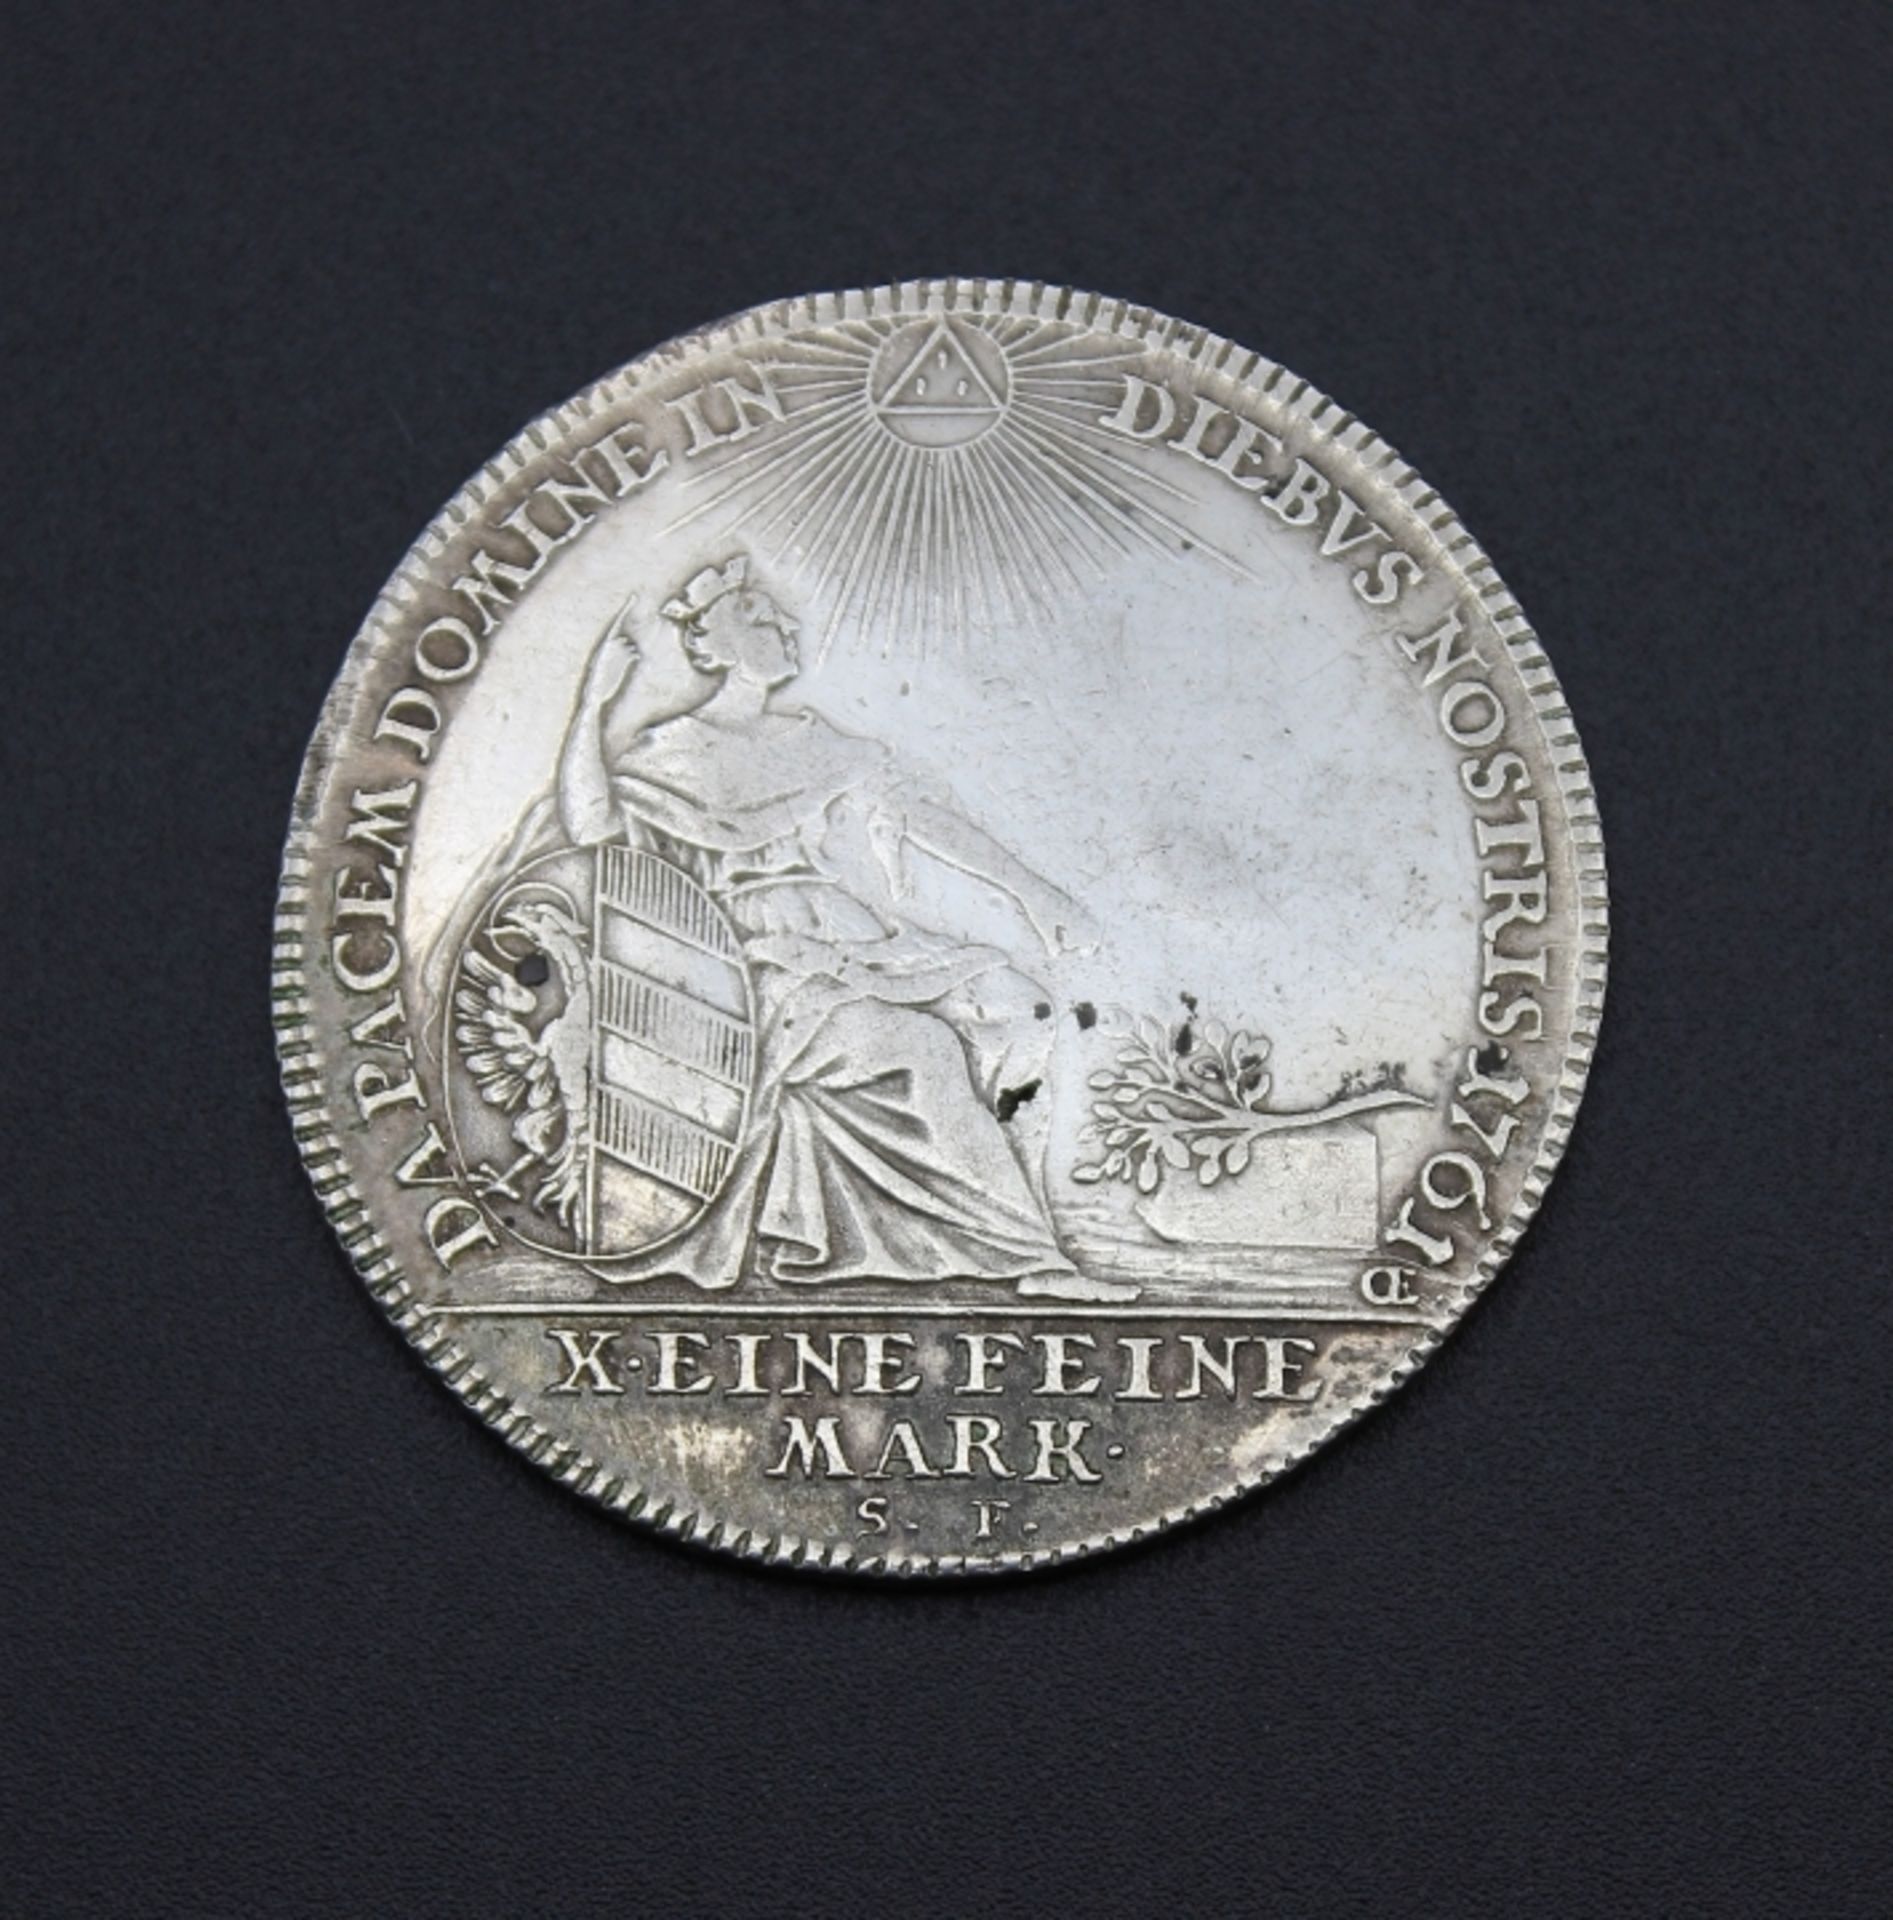 Münze - Nürnberg 1761 Konventionstaler, Silber, Eine feine Mark, Kaiser Franz I., Sitzende Noris auf